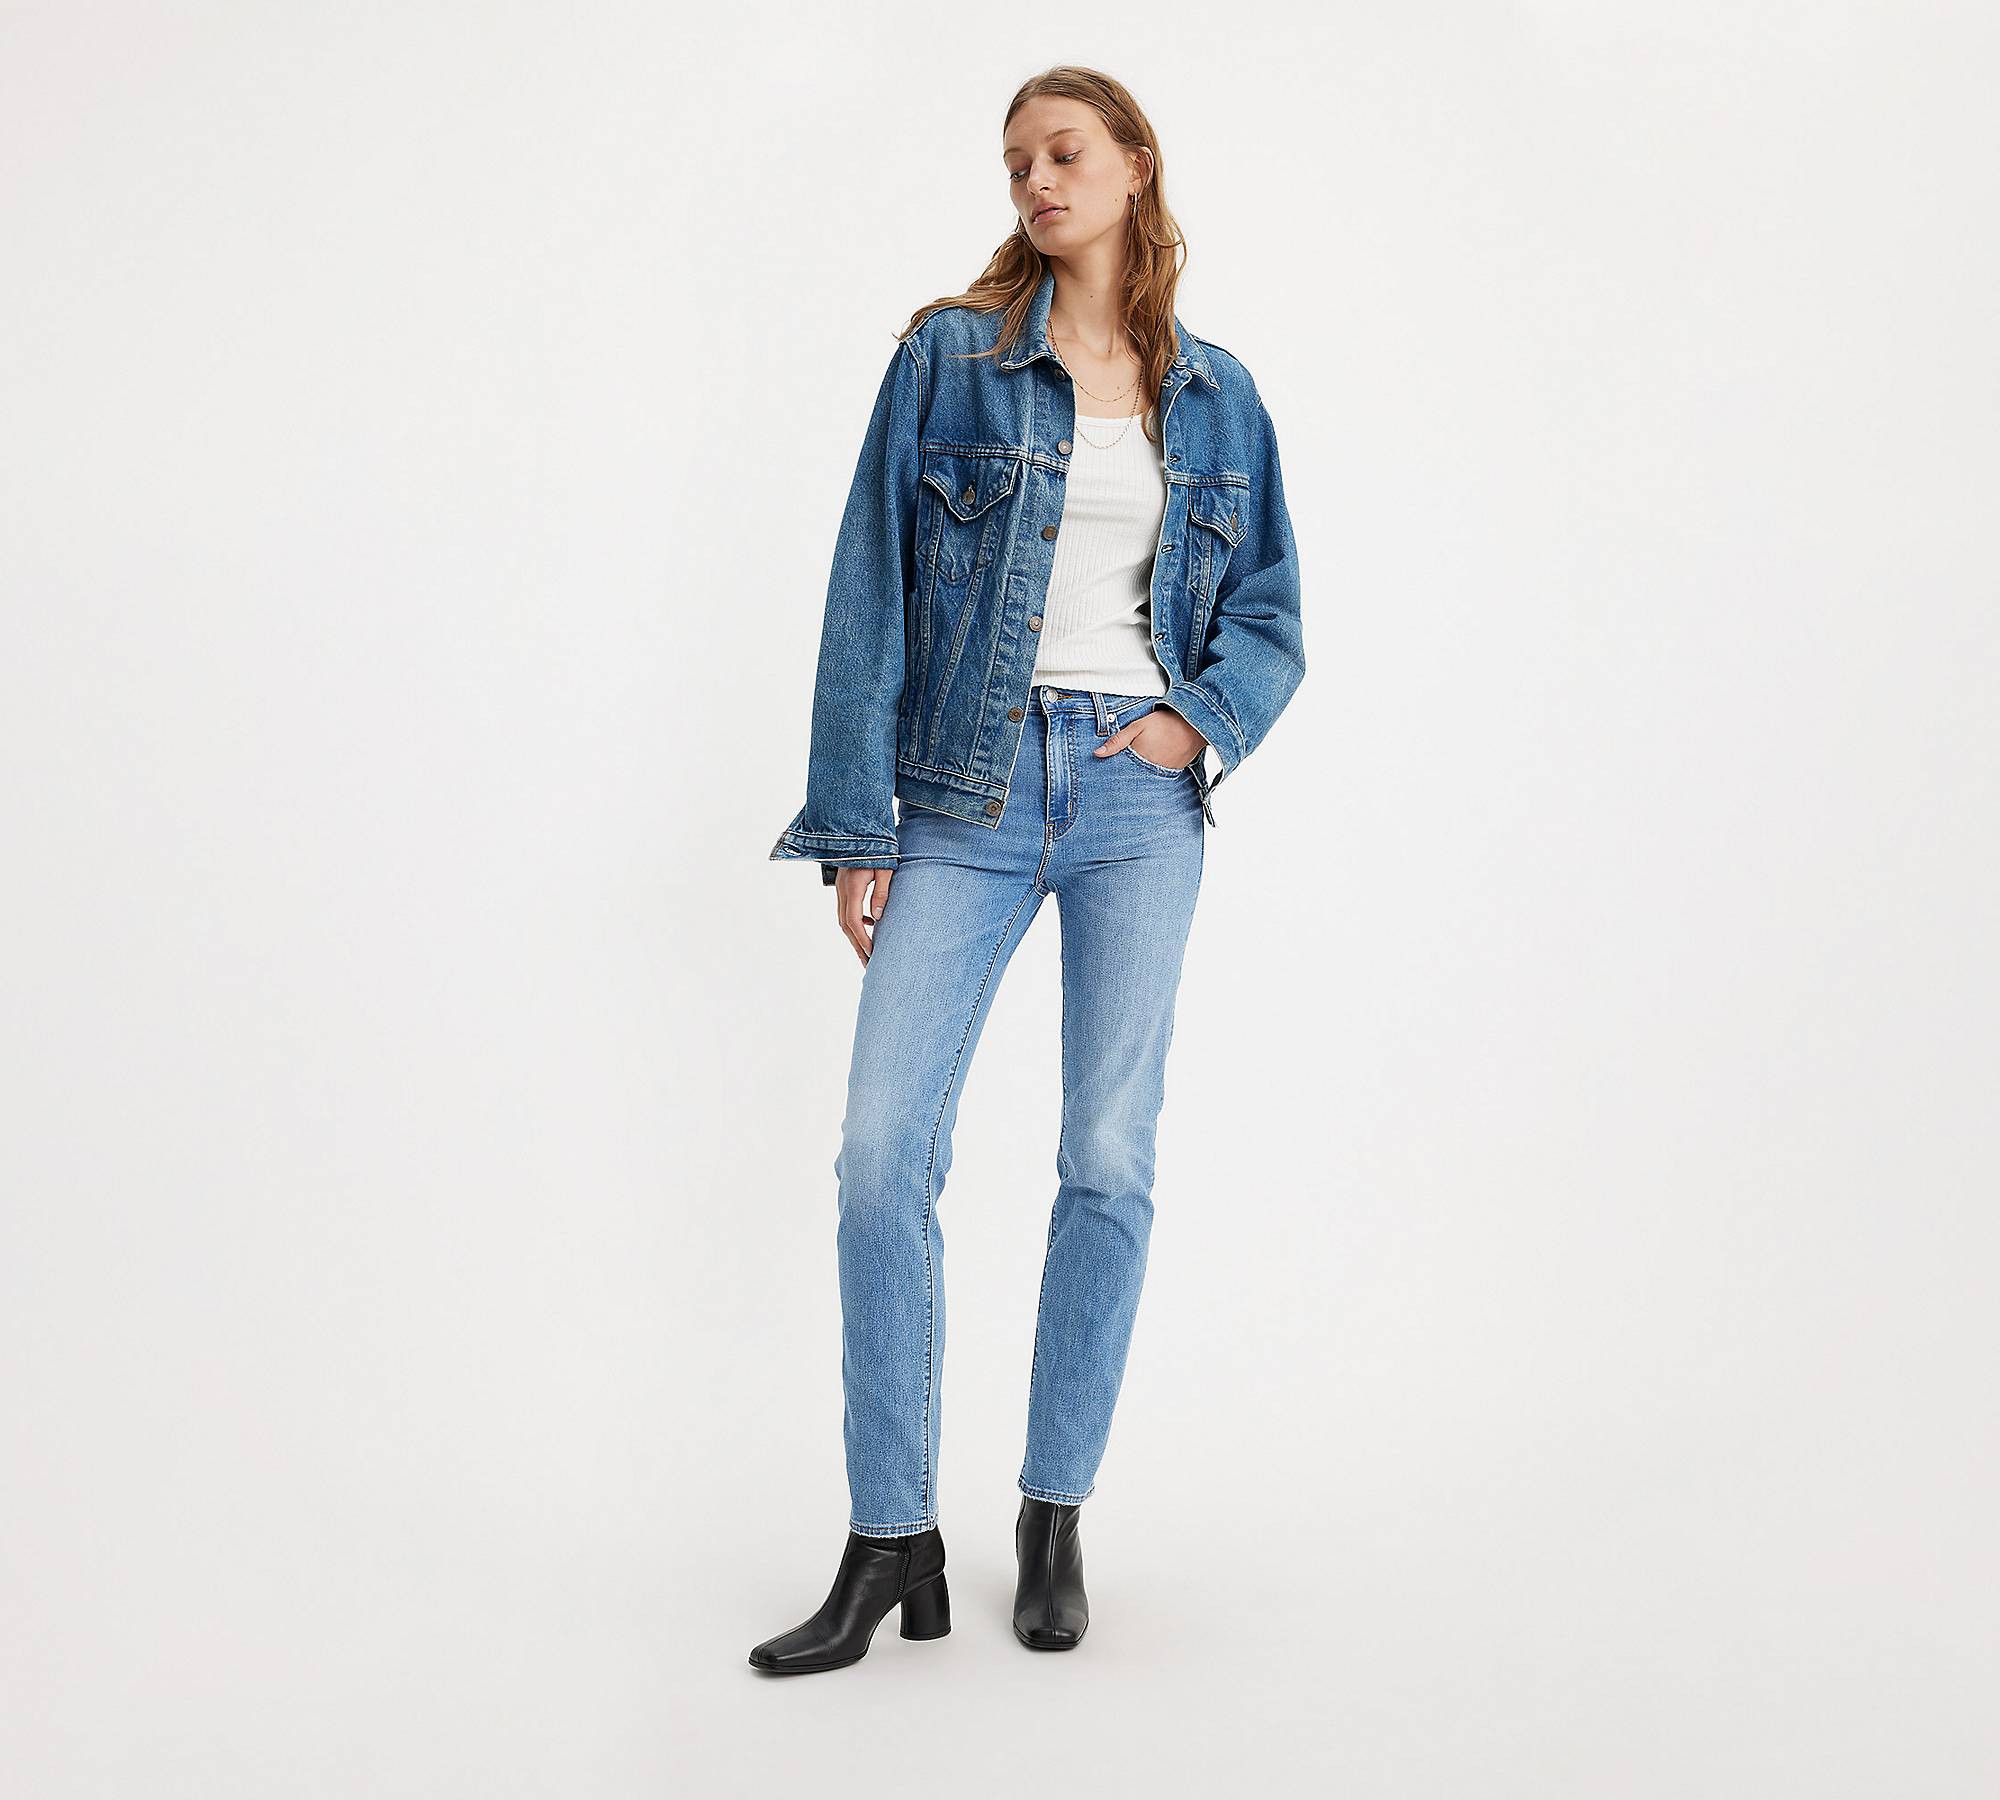 724™ rechte Lightweight jeans met hoge taille 1